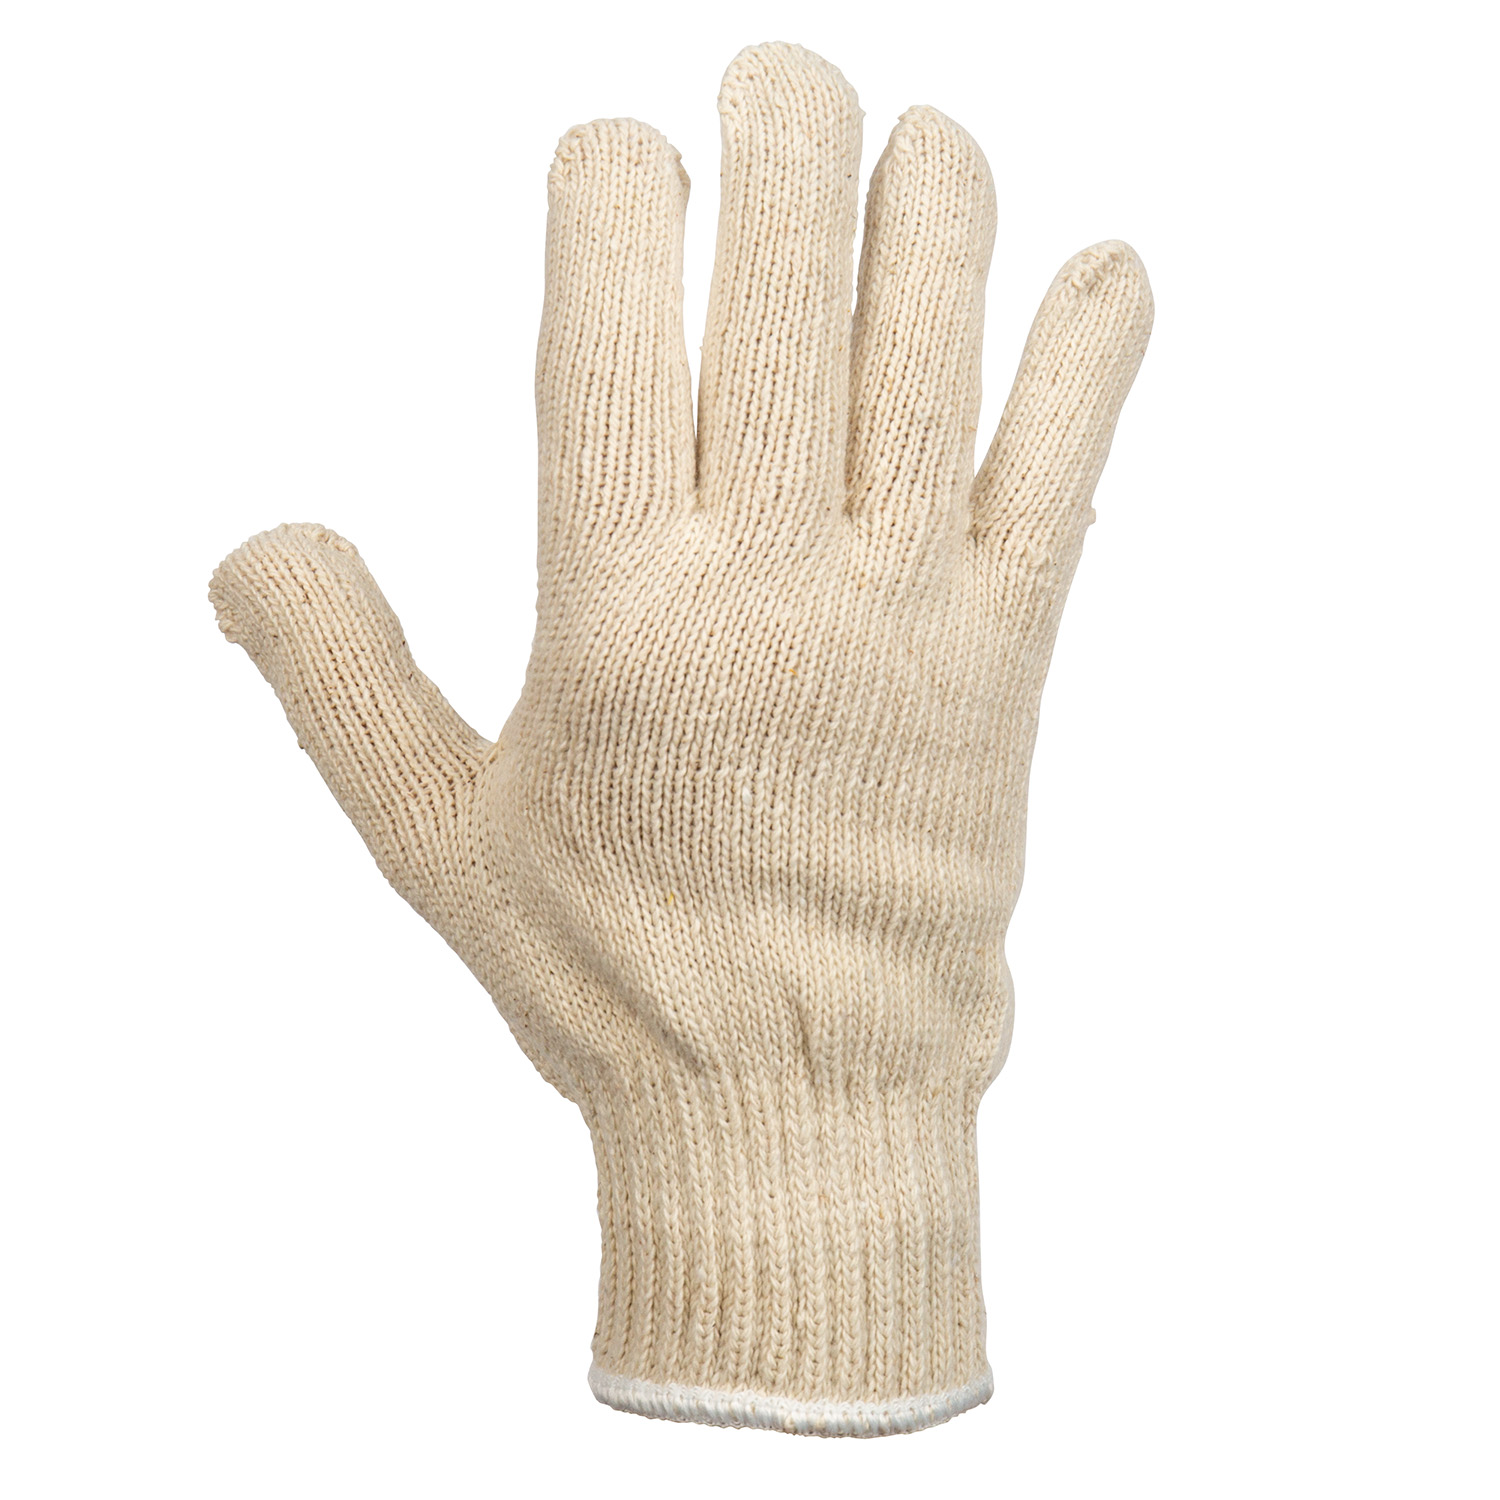 1532 Unlined Work Glove – John Tillman Co.